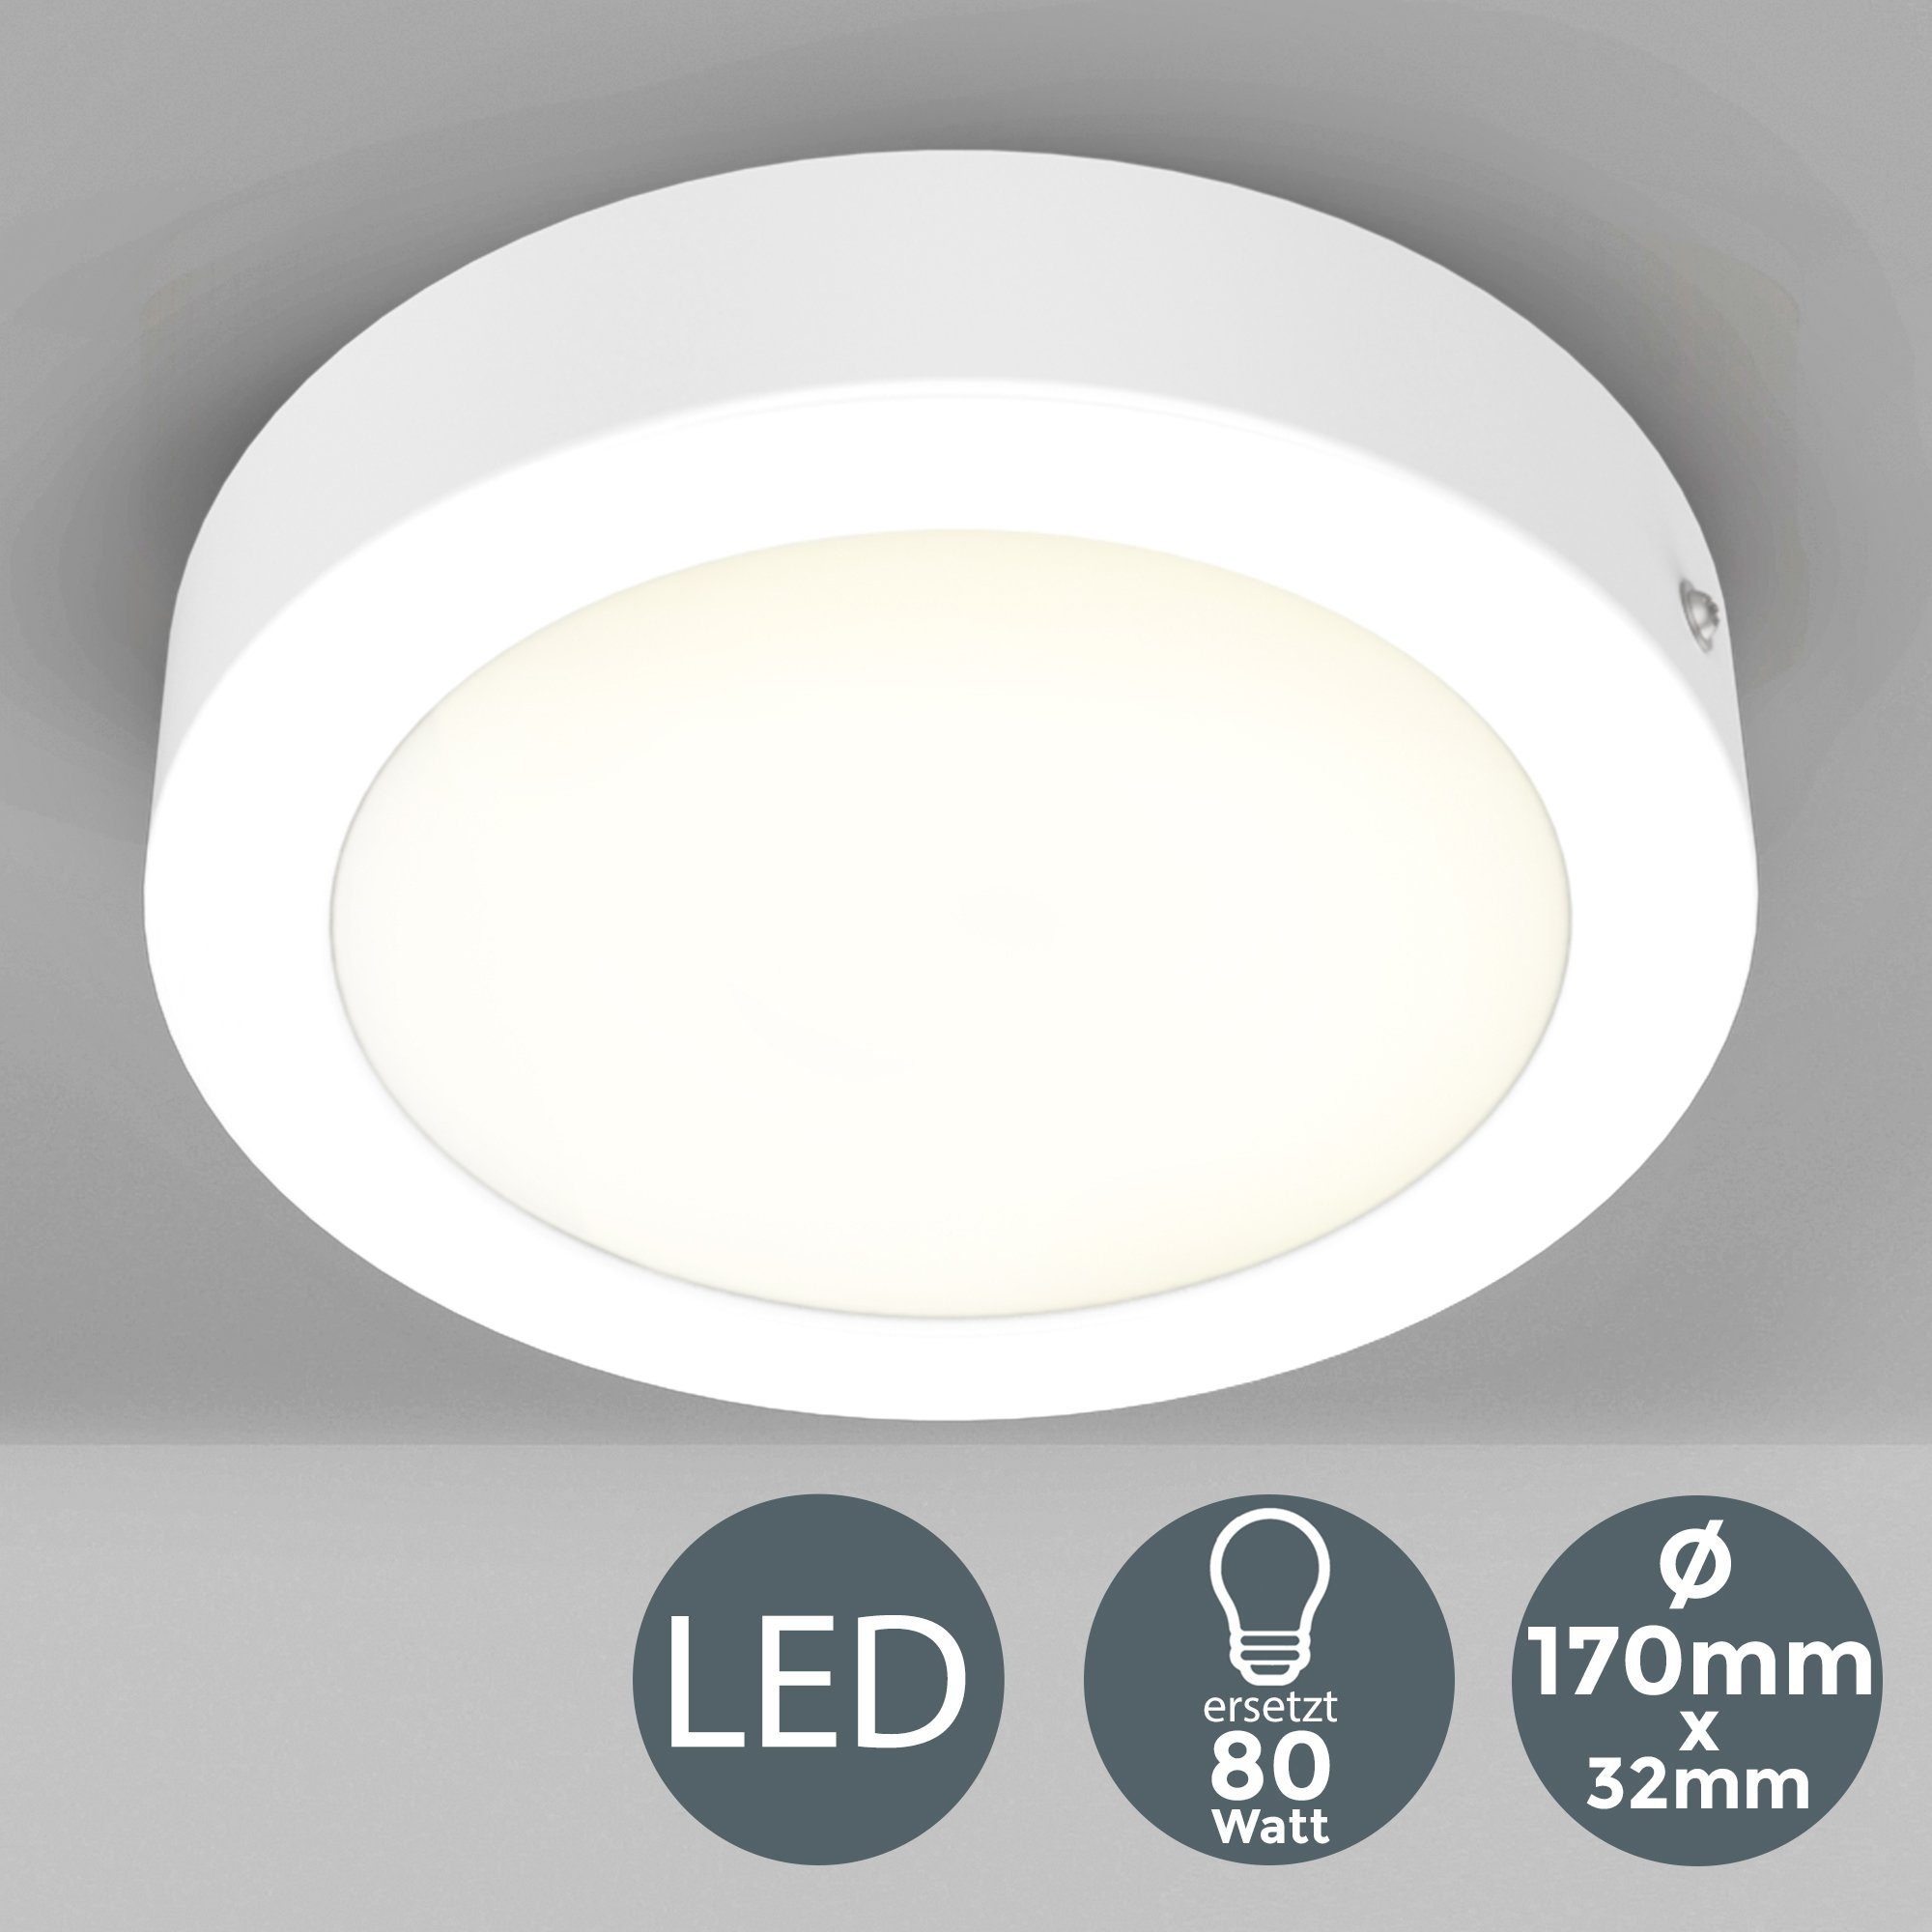 LED Ã˜170mm Panel, Aufbaustrahler integriert, Warmweiß, Garnet, Unterbauleuchte, fest Spots, B.K.Licht Aufputz-Decken LED 900Lm, 12W